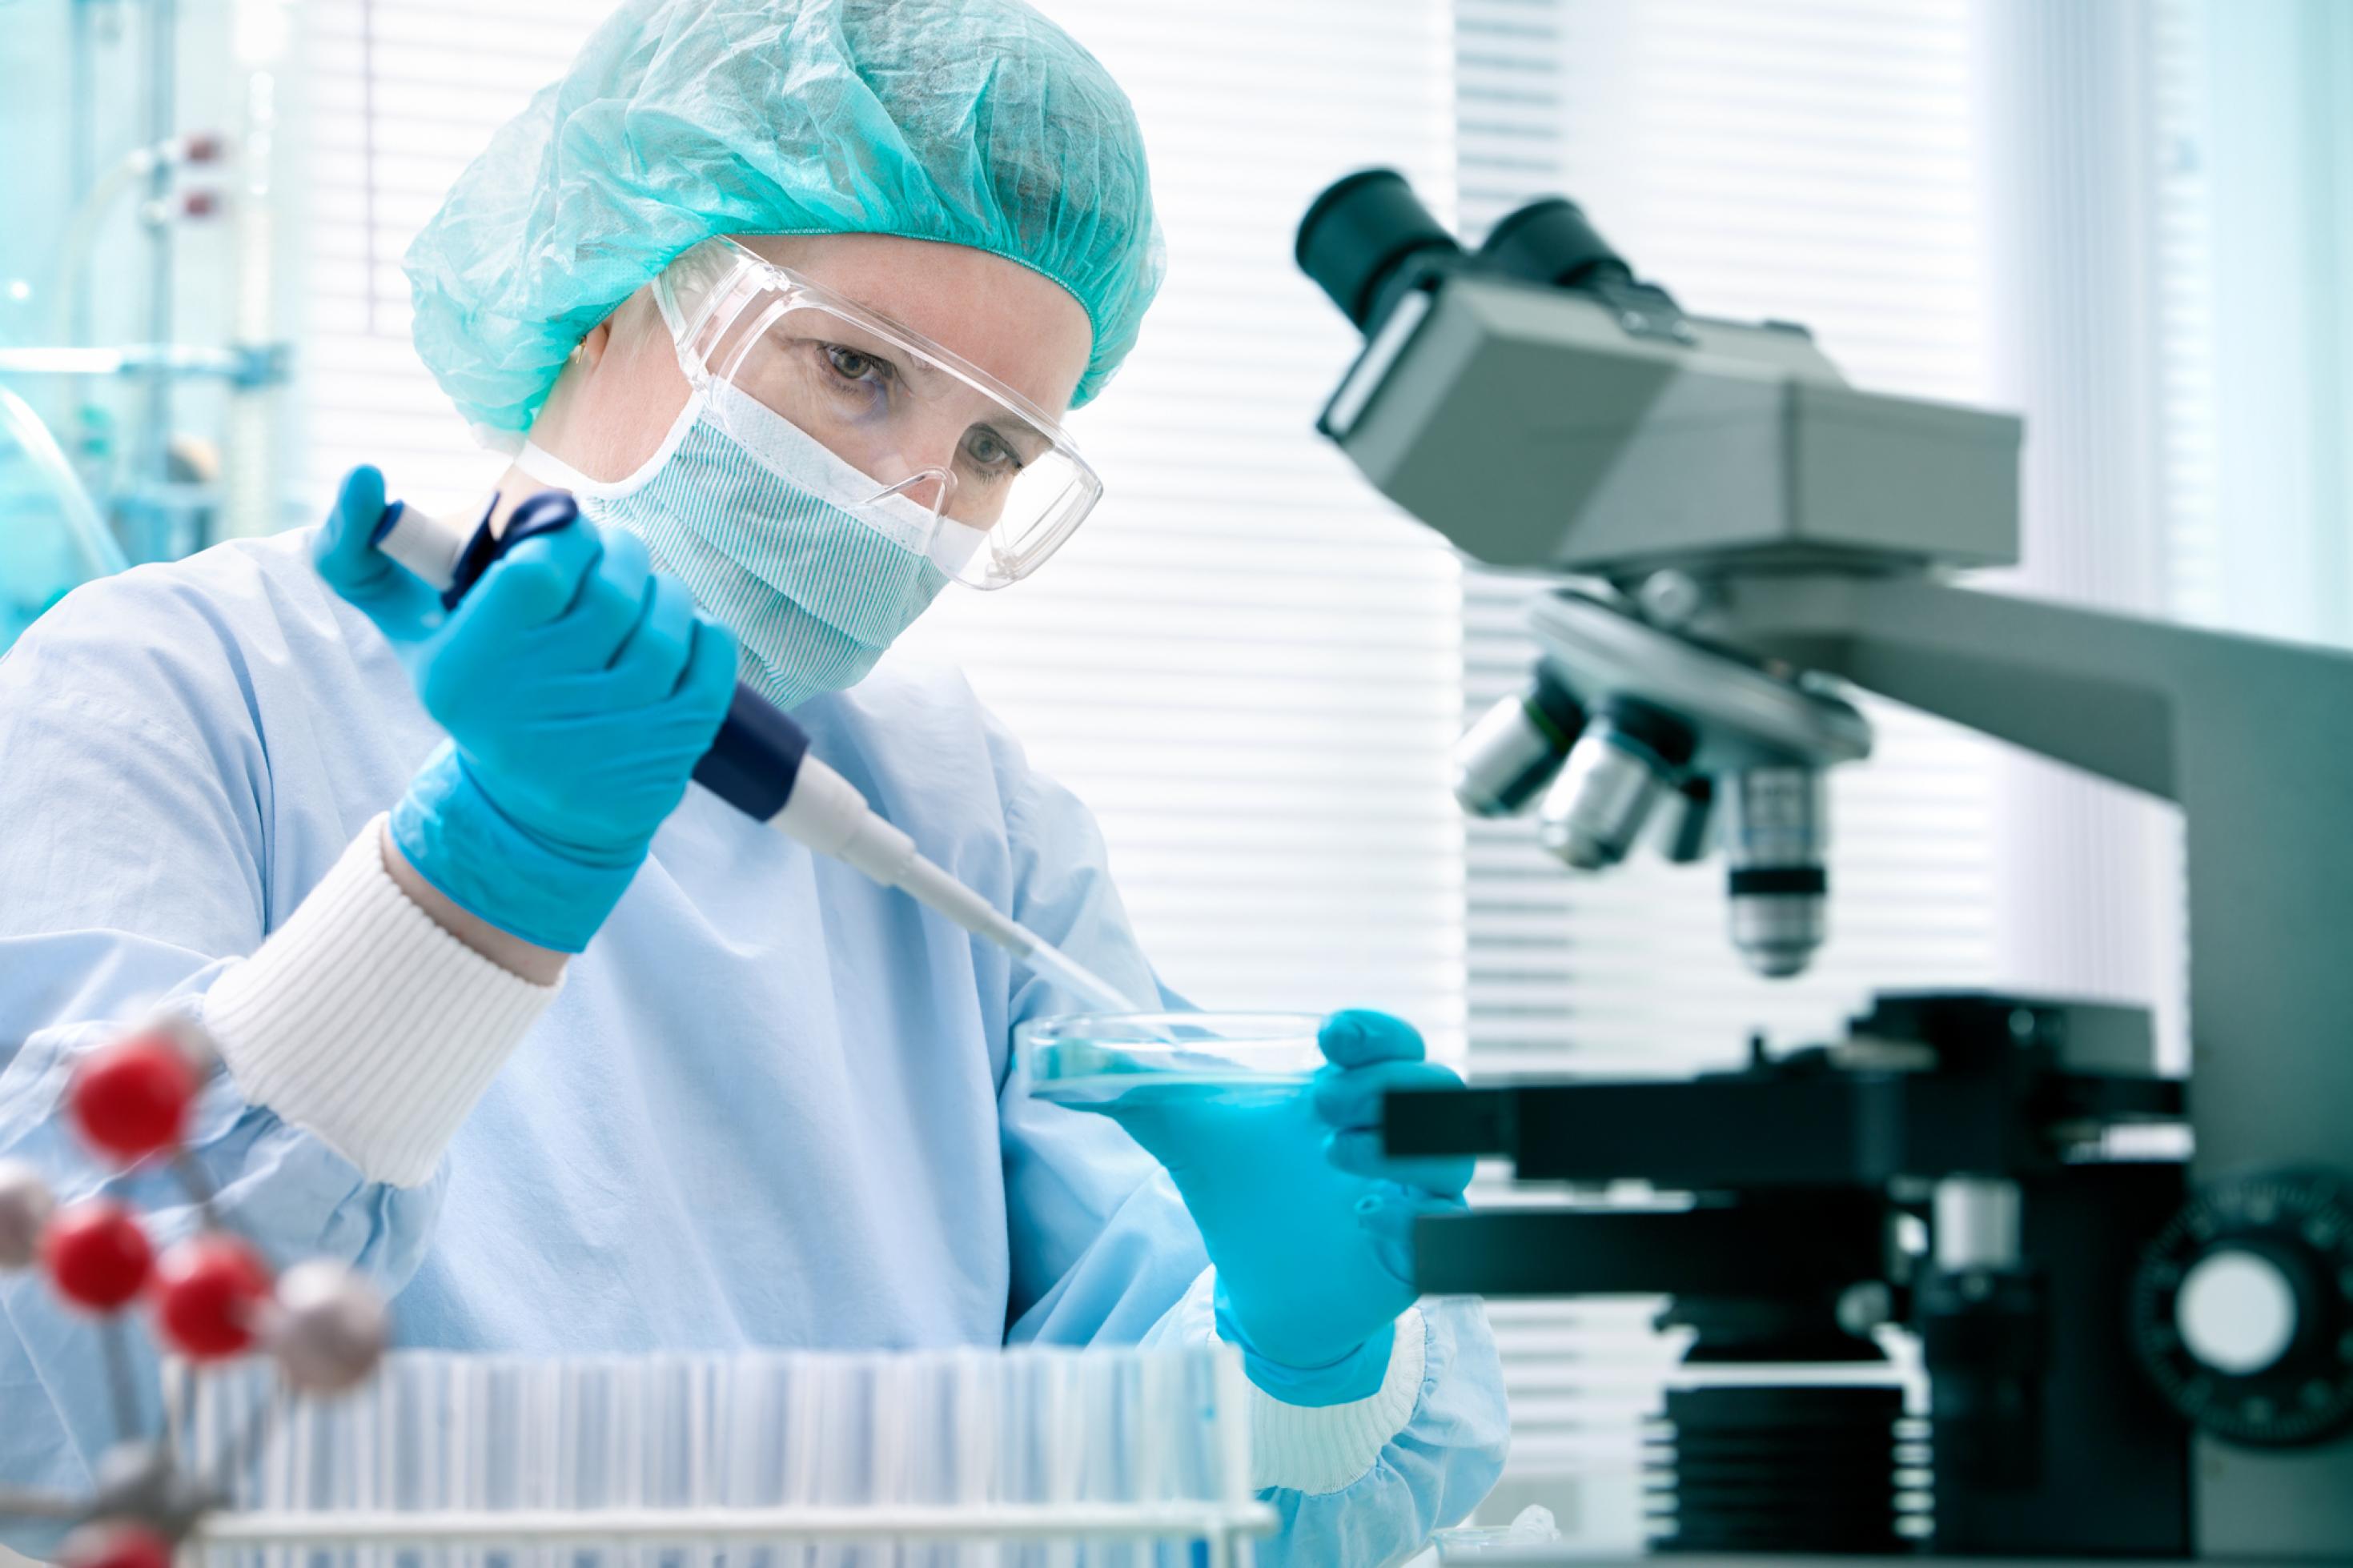 Das Symbolfoto zeigt eine Wissenschaftlerin im Labor. Sie trägt einen Mundschutz und hat eine Pipette in der Hand, mit der sie etwas in eine Petrischale träufelt. Auch ein Mikroskop ist auf dem Bild dargestellt.